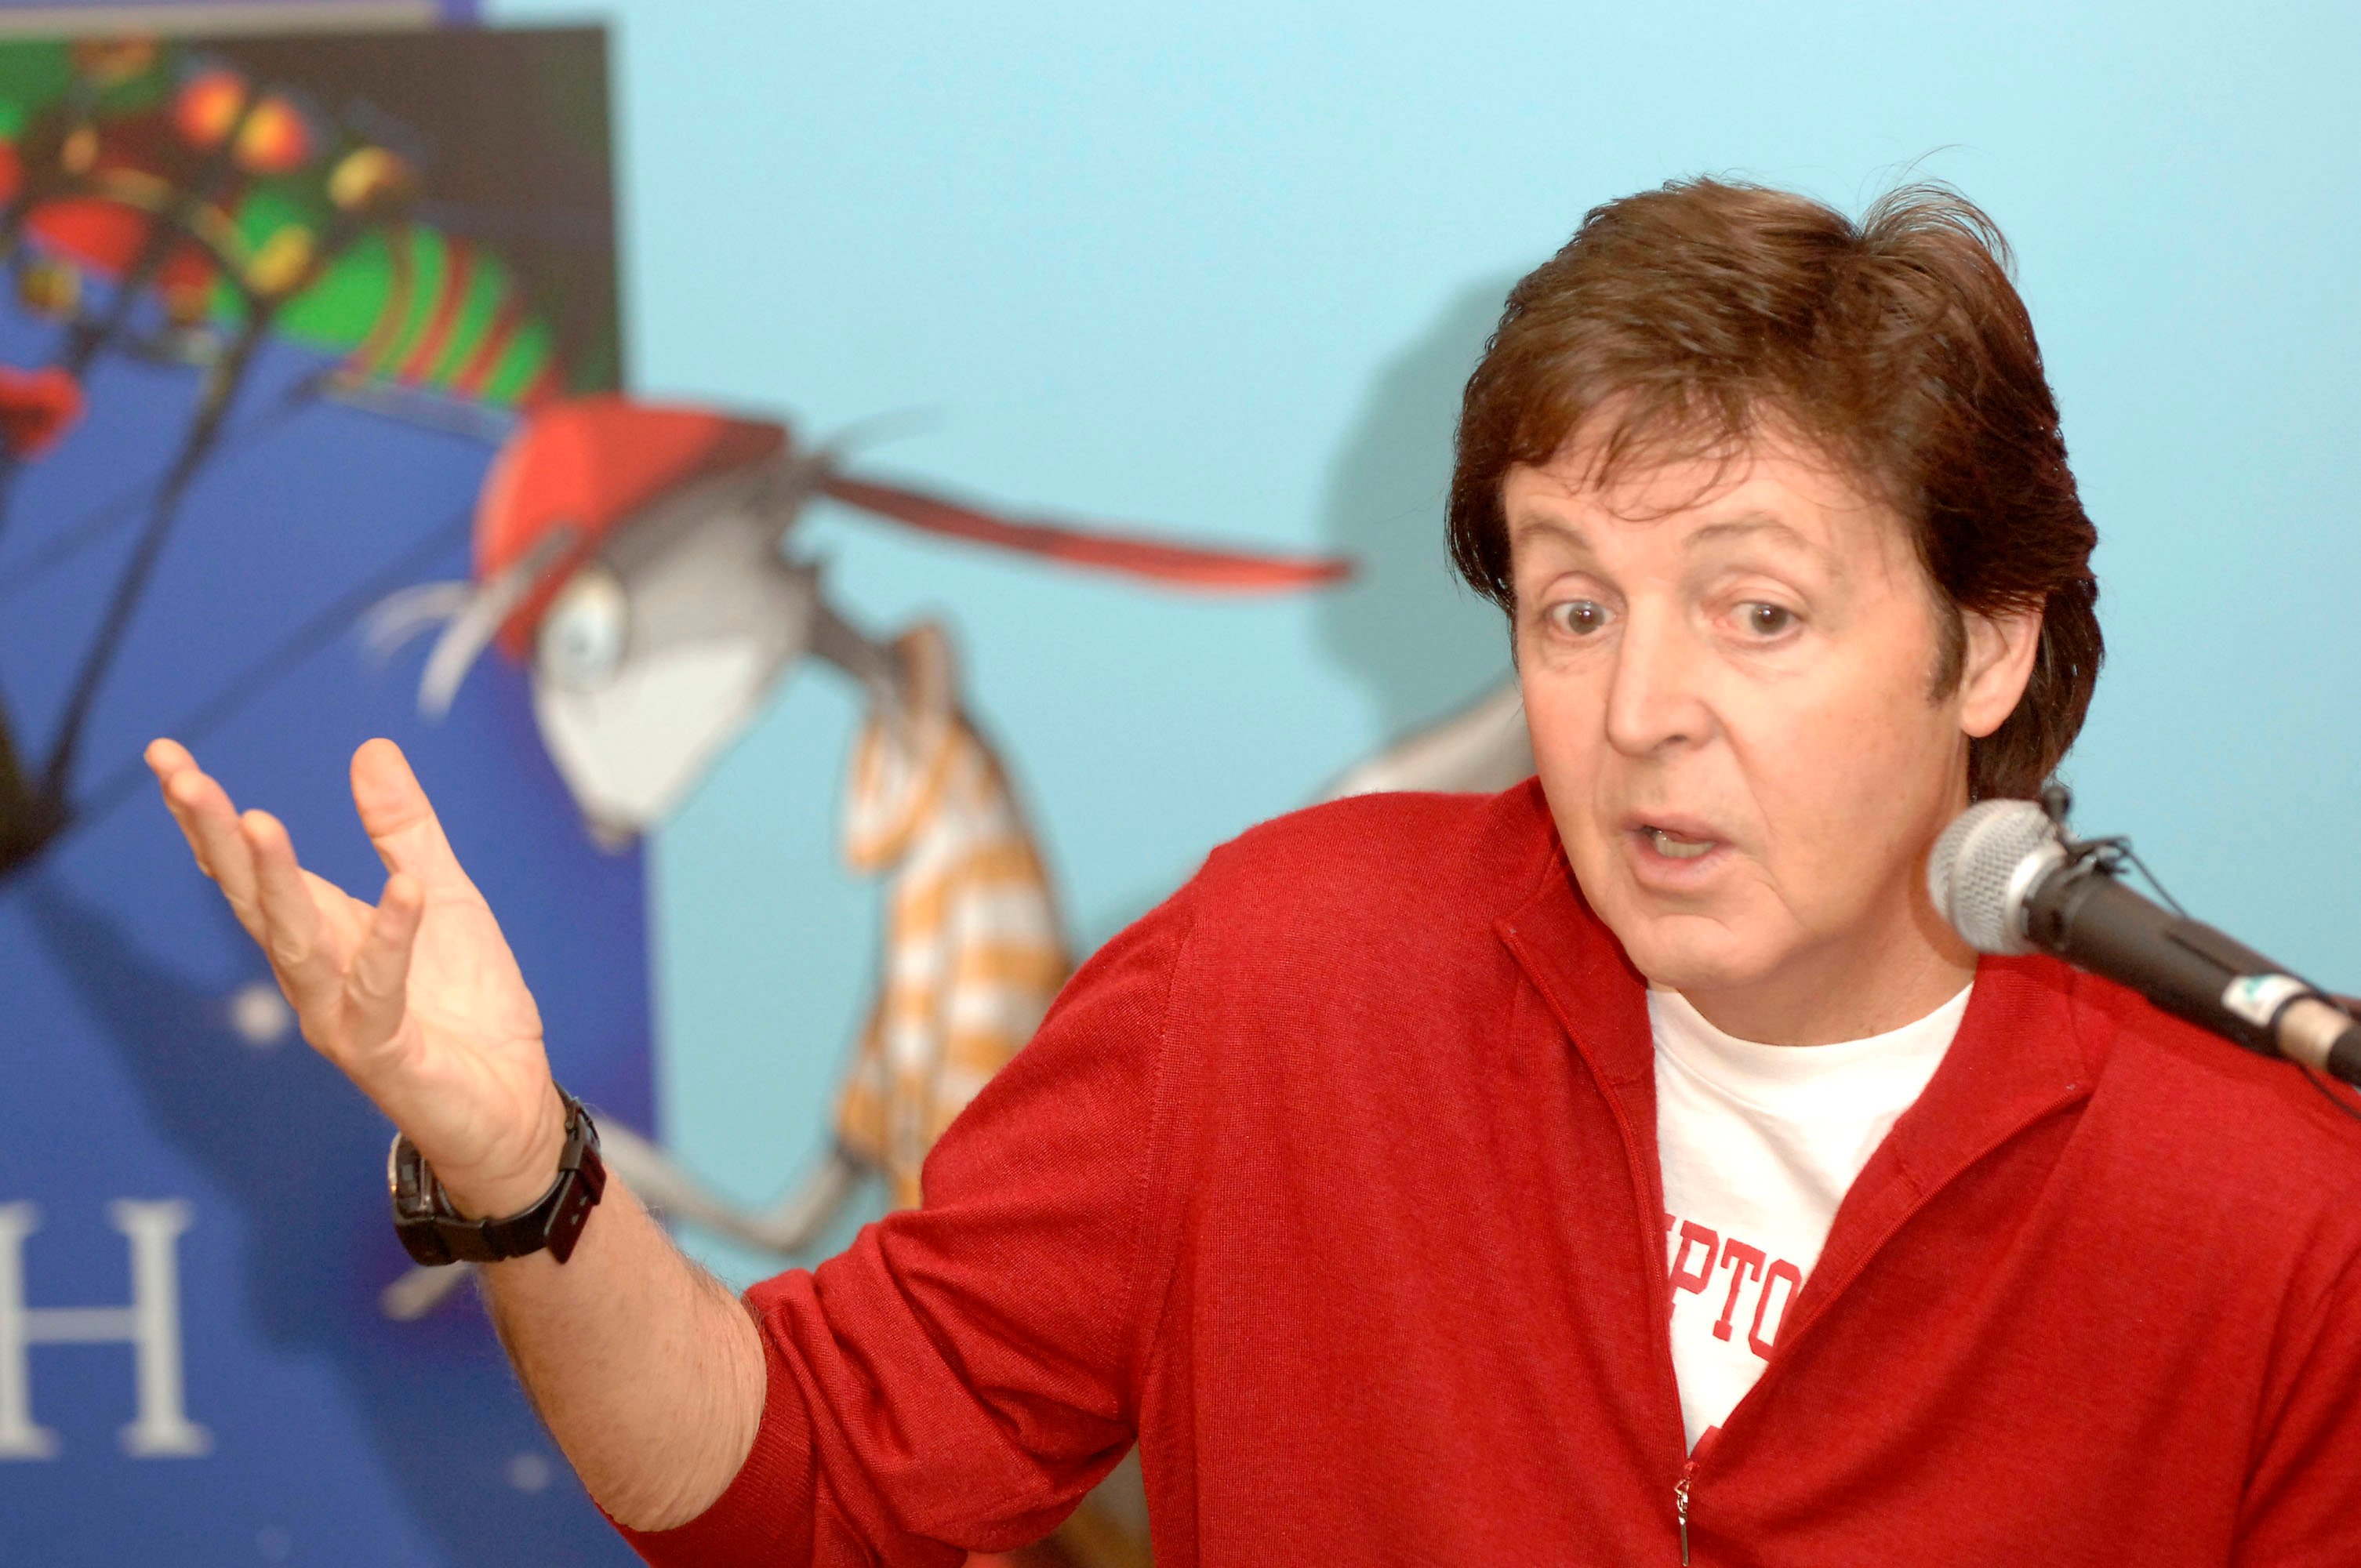 Paul McCartney membagikan Penulis yang Membuatnya Tertarik pada Sastra